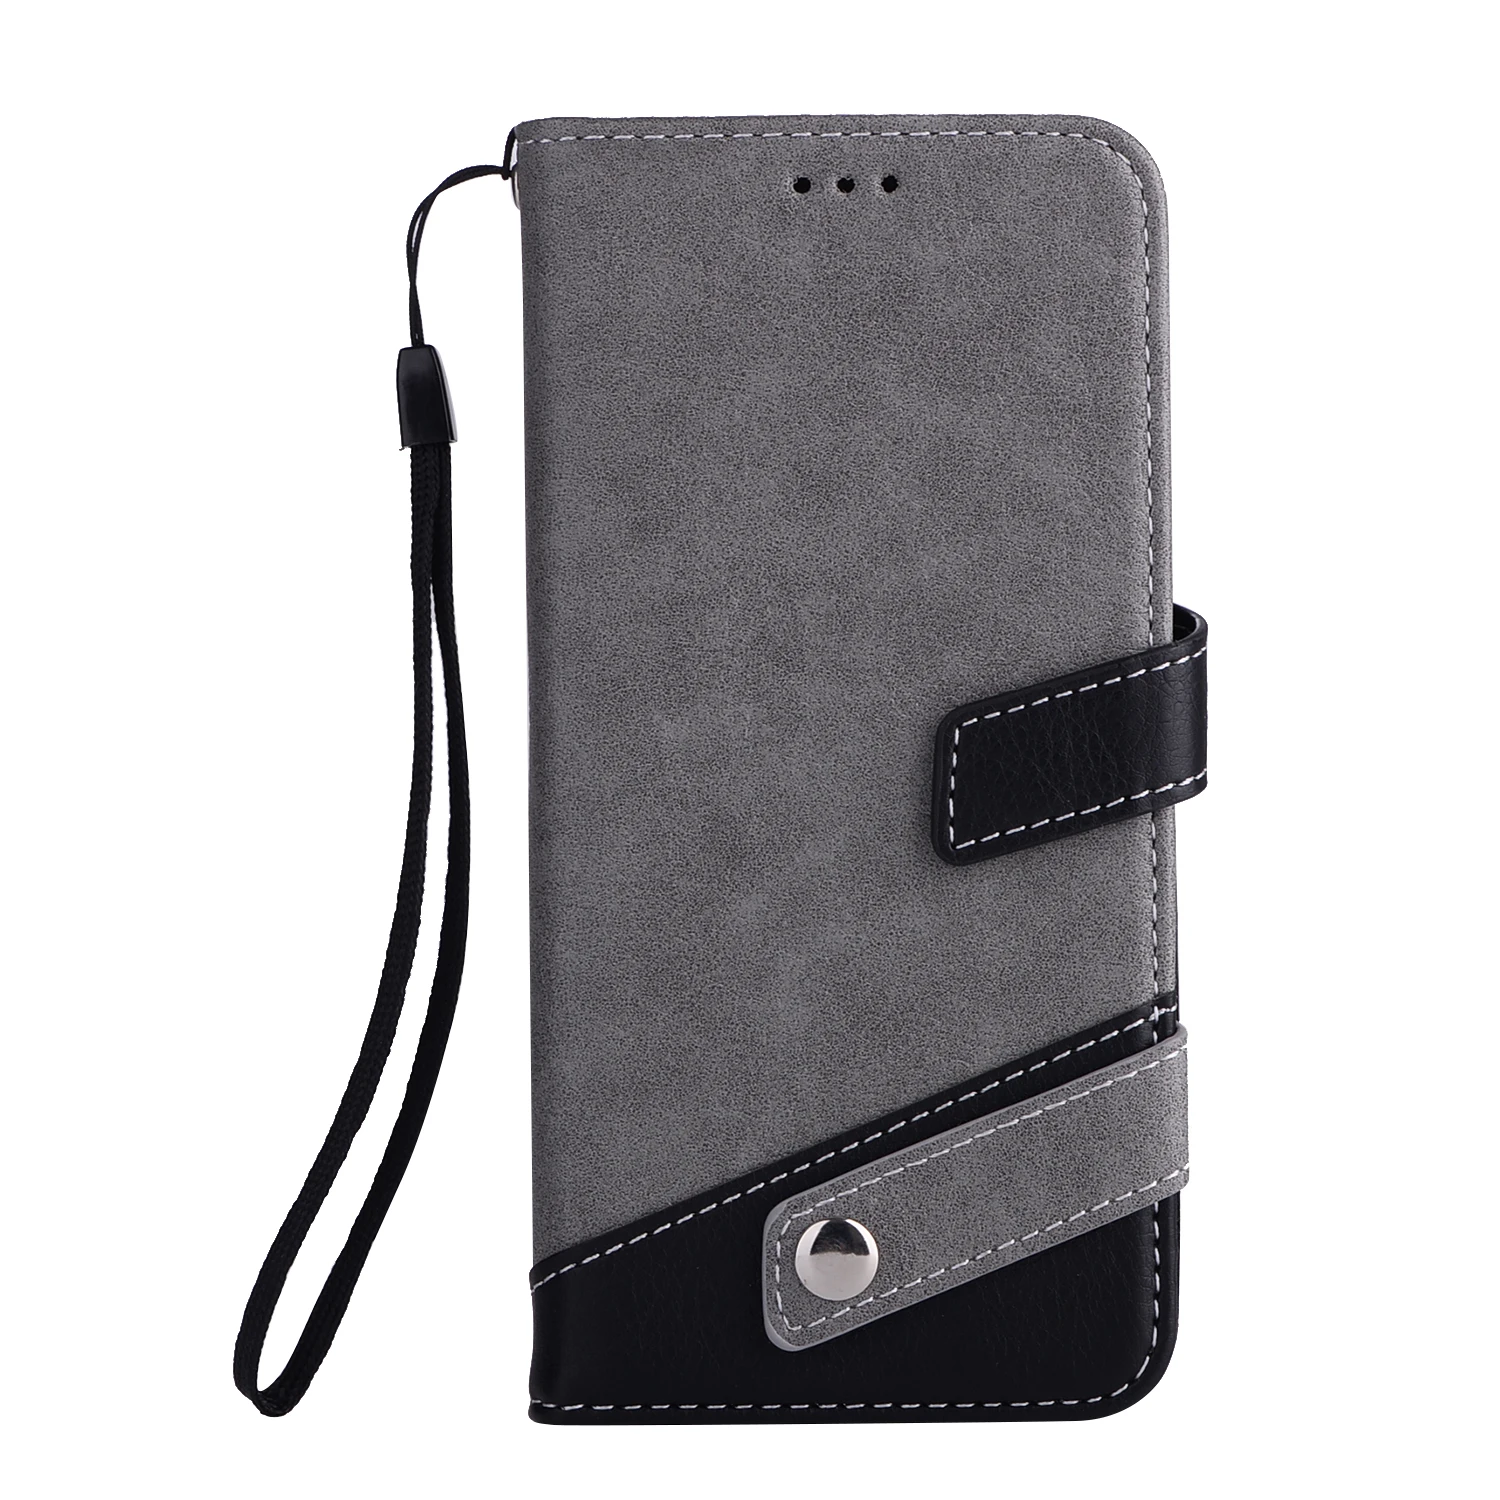 Nephy модный кожаный чехол-портмоне с застежкой Чехол для телефона для samsung Galaxy S8 S9 плюс S6 S7 край A3 A5 J3 J5 J7 Pro A8 Note8 задняя крышка - Цвет: gray